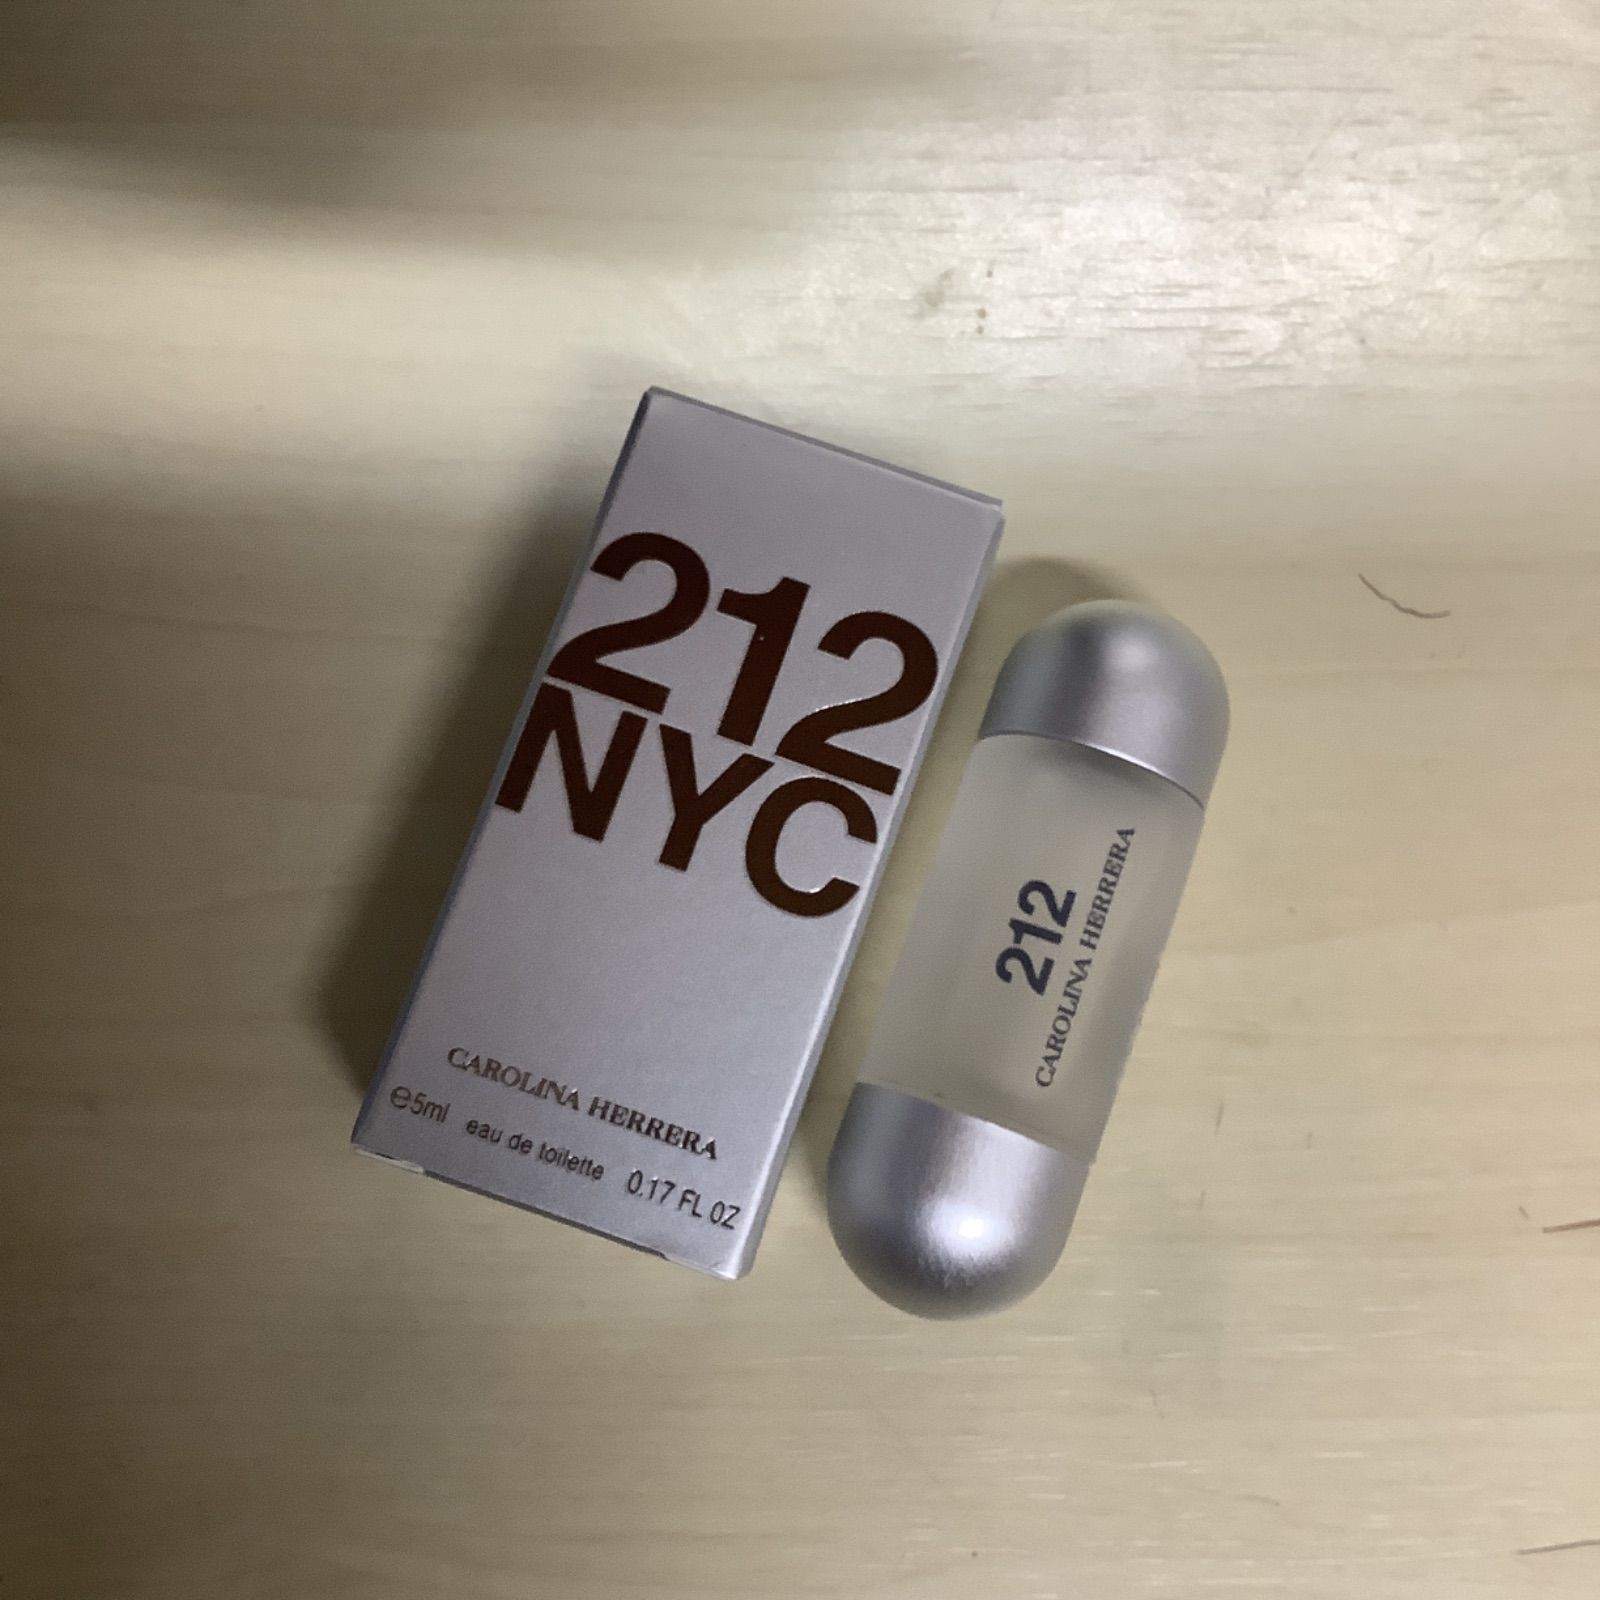 キャロライナへレラ 212 NYC オードトワレ 香水 ミニ 5ml - 香水